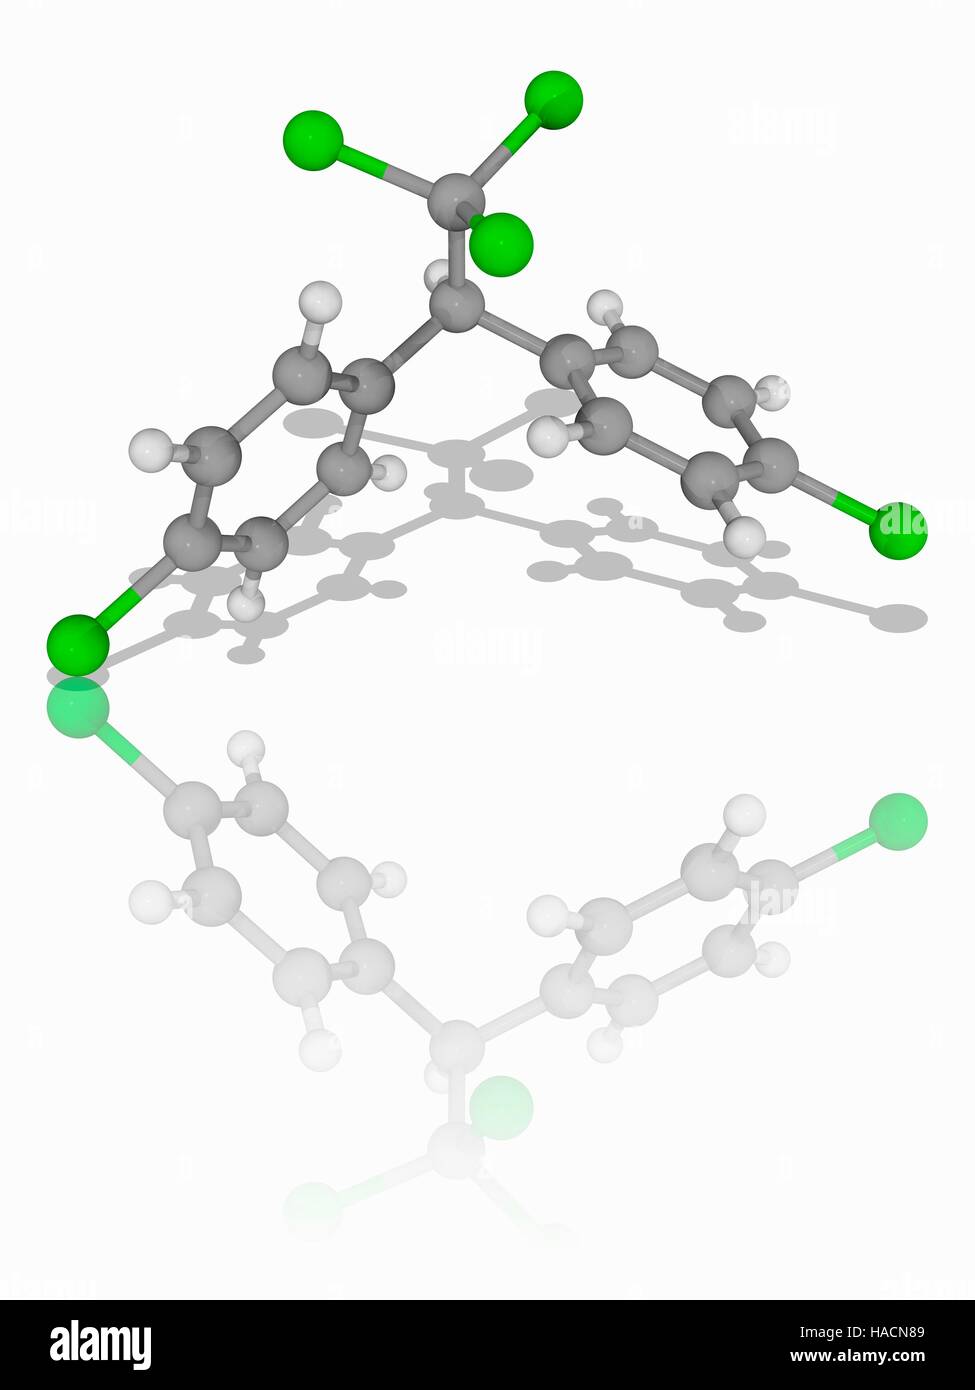 Il DDT insetticida. Il modello molecolare dell'insetticida  dichlorodiphenyltrichloroethane (DDT, C14.H9.Cl5). Questo insetticida  sintetico è vietato in tutto il mondo. Gli atomi sono rappresentati da  sfere e sono codificati a colori: carbonio (grigio),